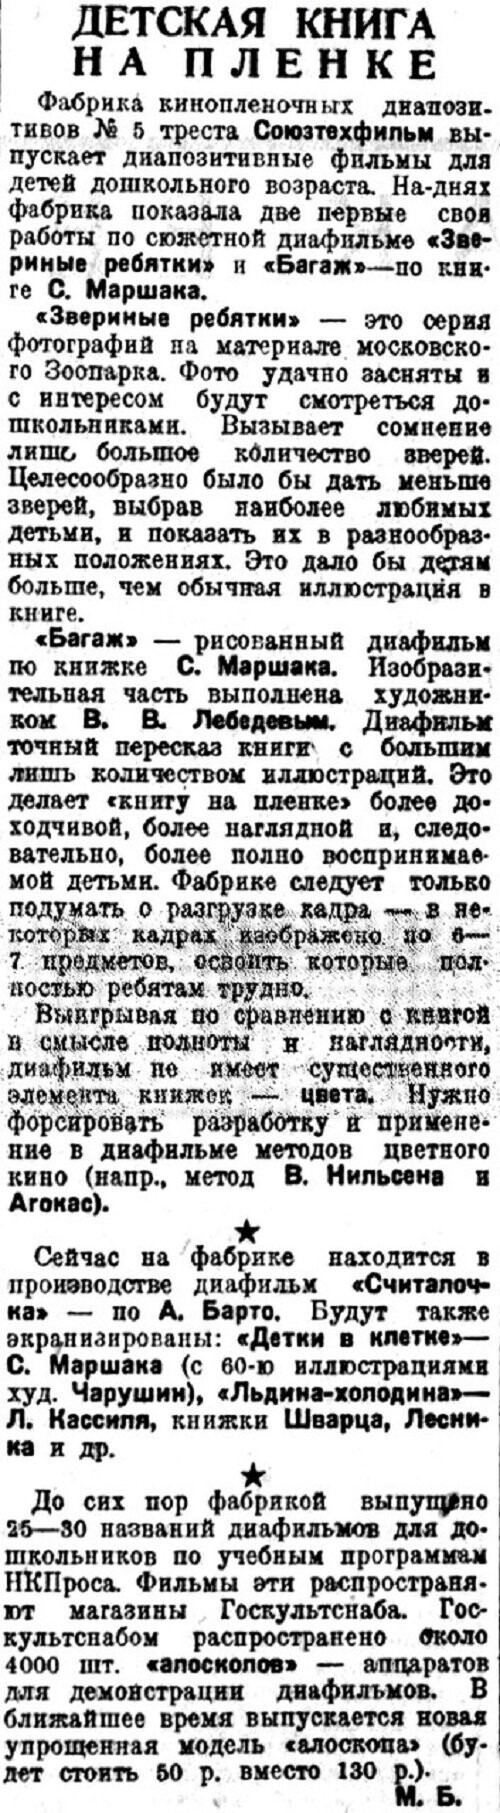 «Литературная газета», 12 декабря 1934 г.